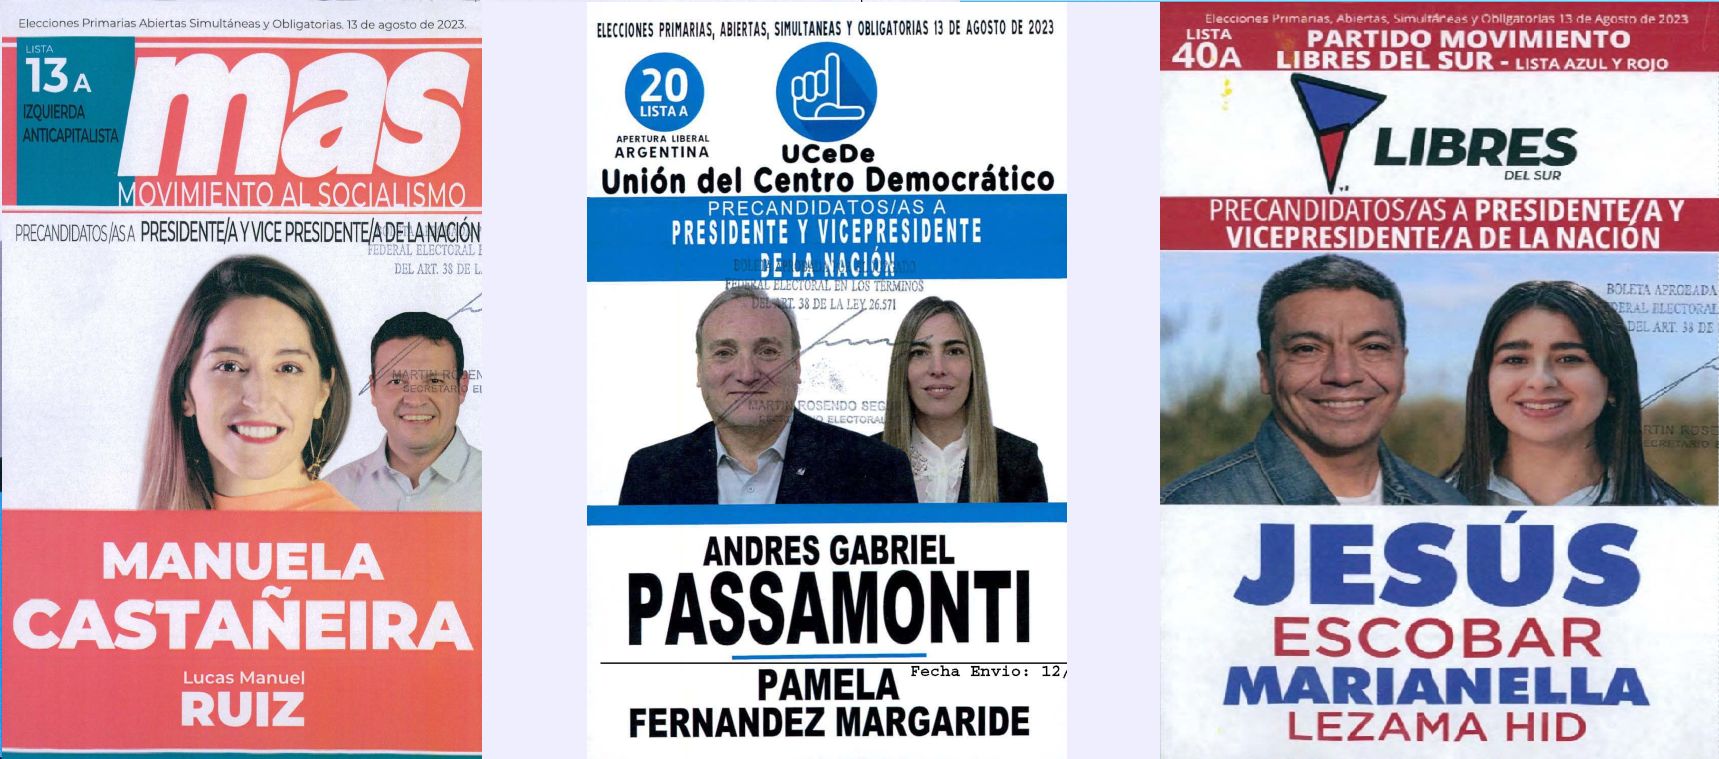 Lista 13: MAS Movimiento al Socialismo - Manuela Castañeira; Lista 20: Unión del Centro Democrático - Andrés Pasamonti; Lista 40: Libres del Sur - Jesús Escobar.